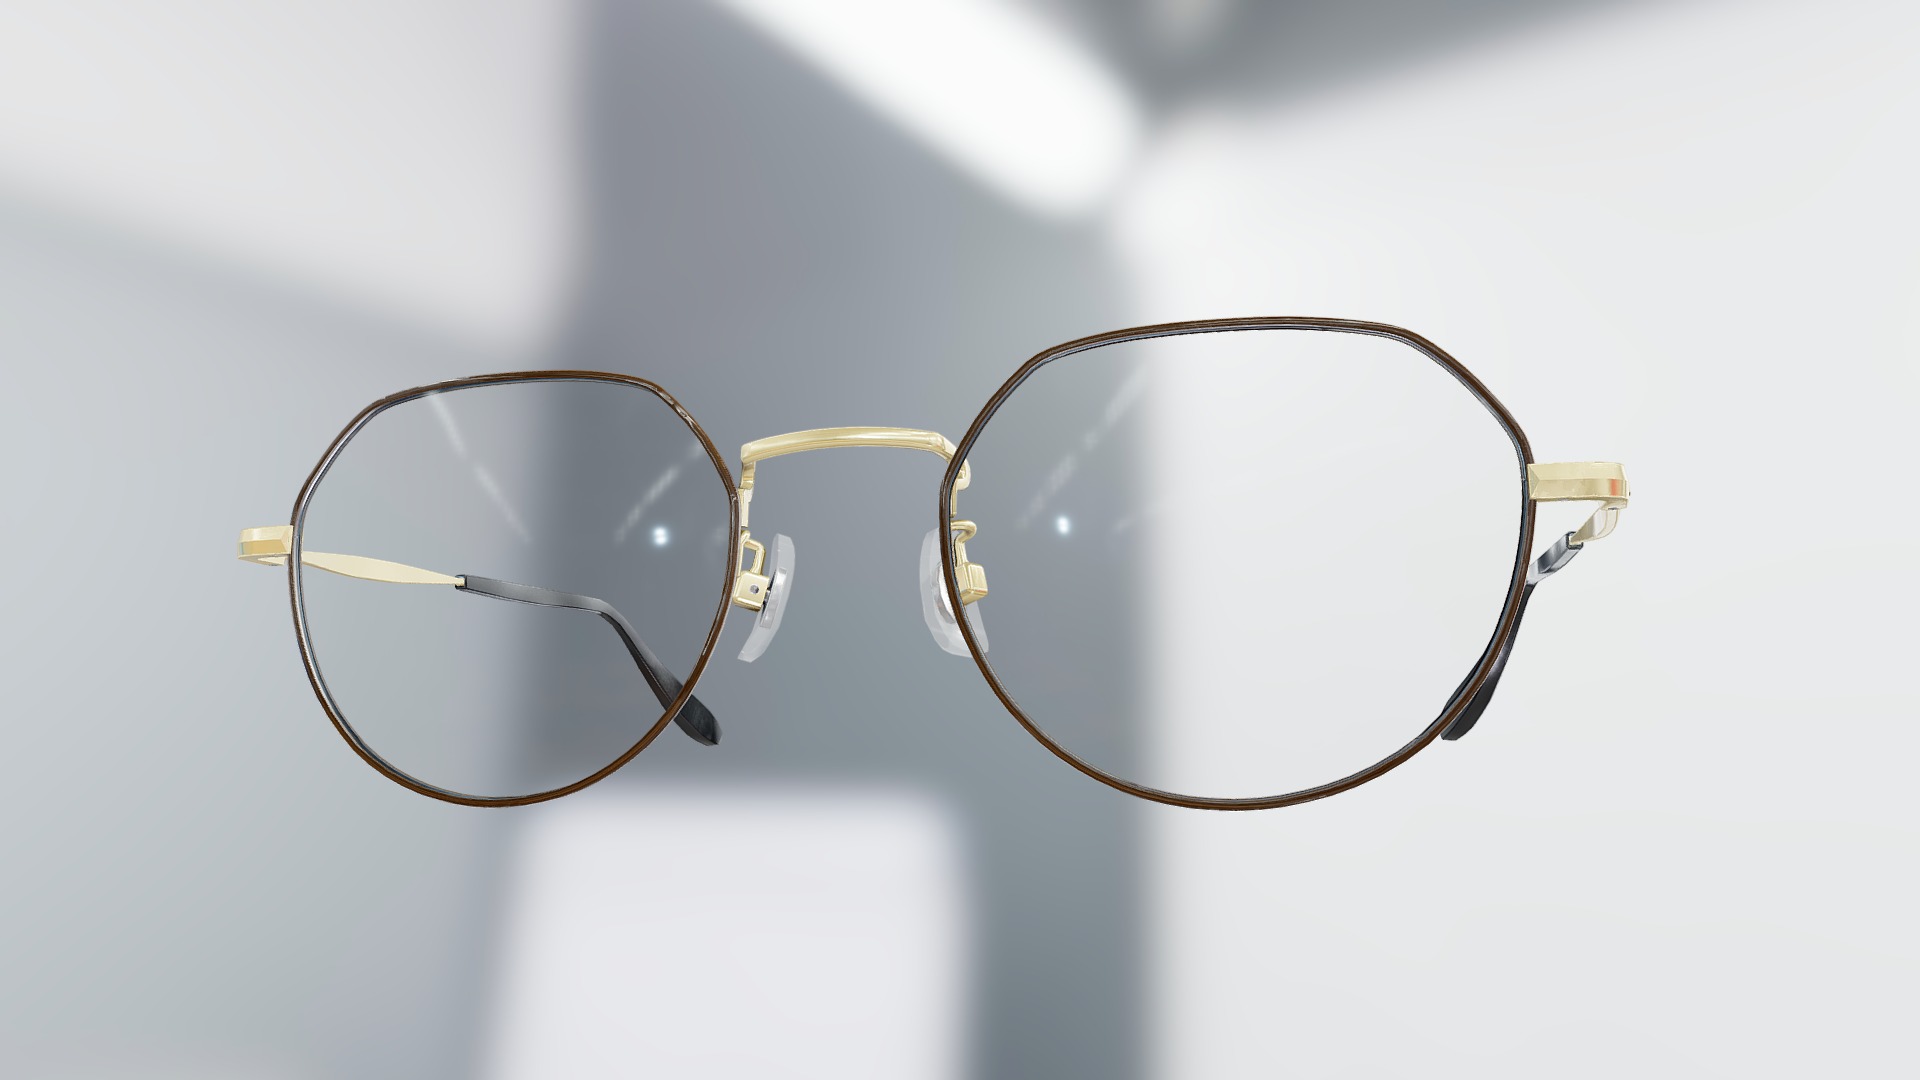 Generic Metal Crown Panto Glasses (Brown) - 3D model by VirTry Teams ...